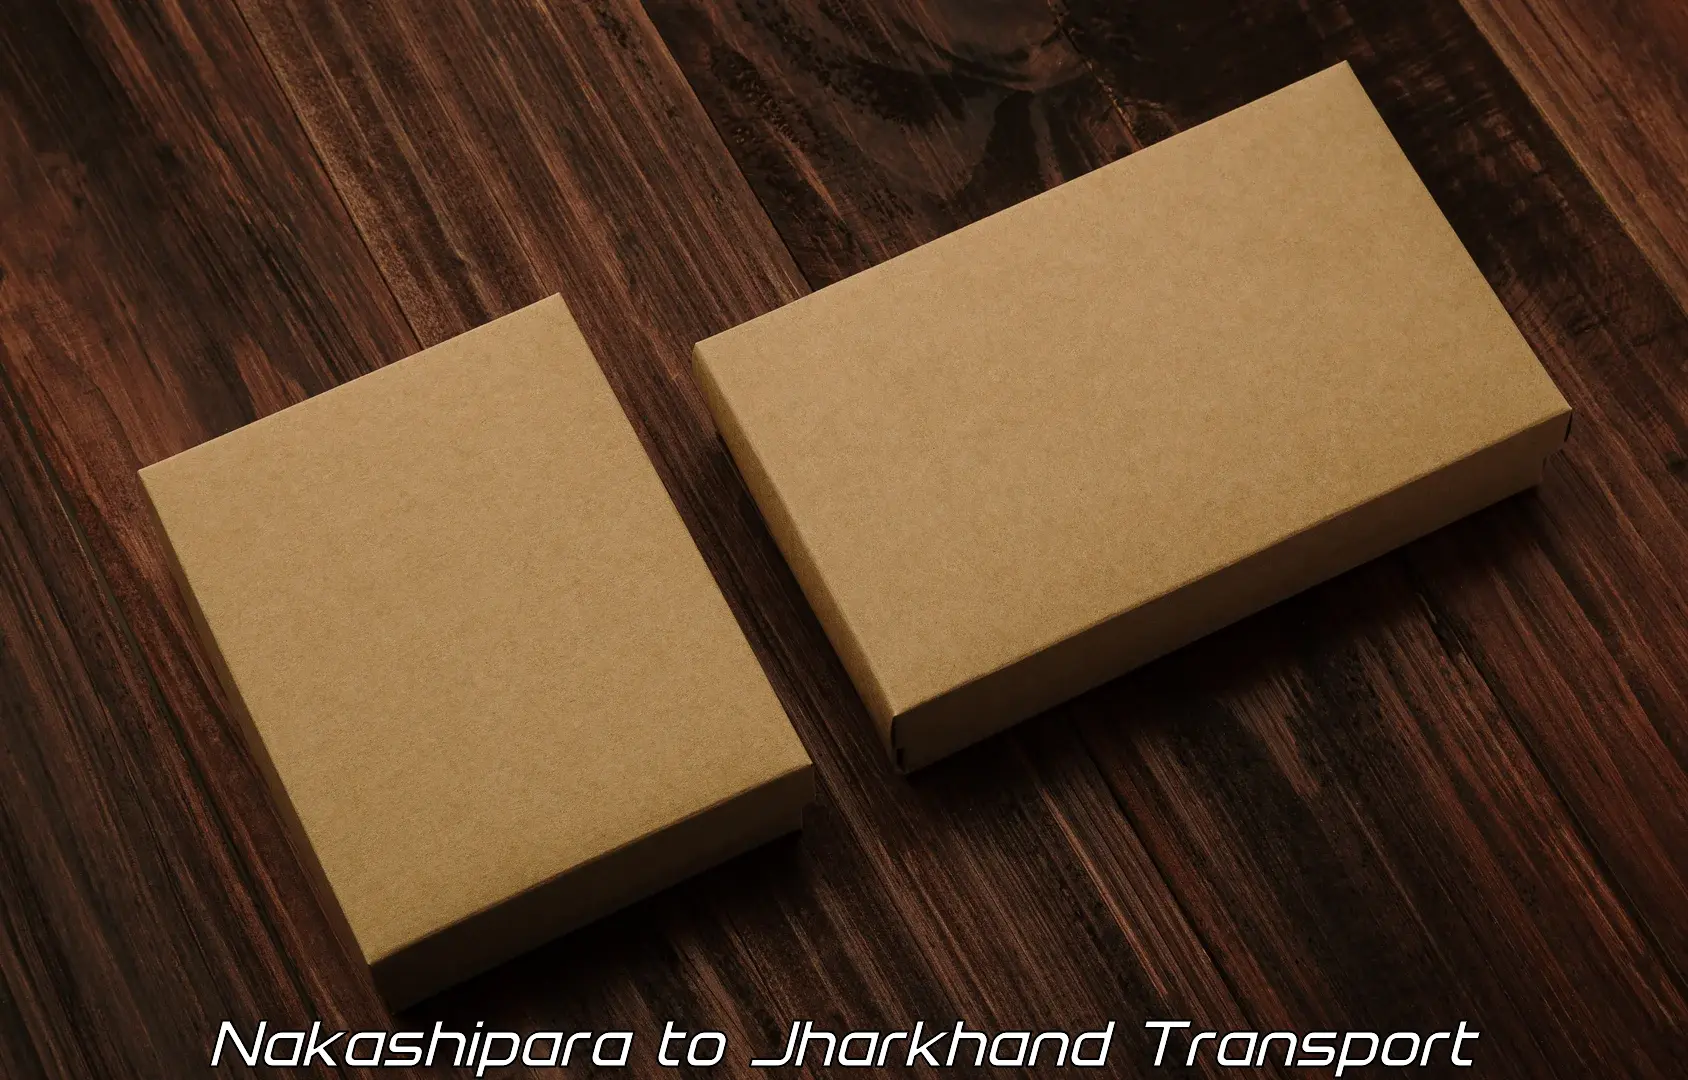 Package delivery services Nakashipara to Medininagar